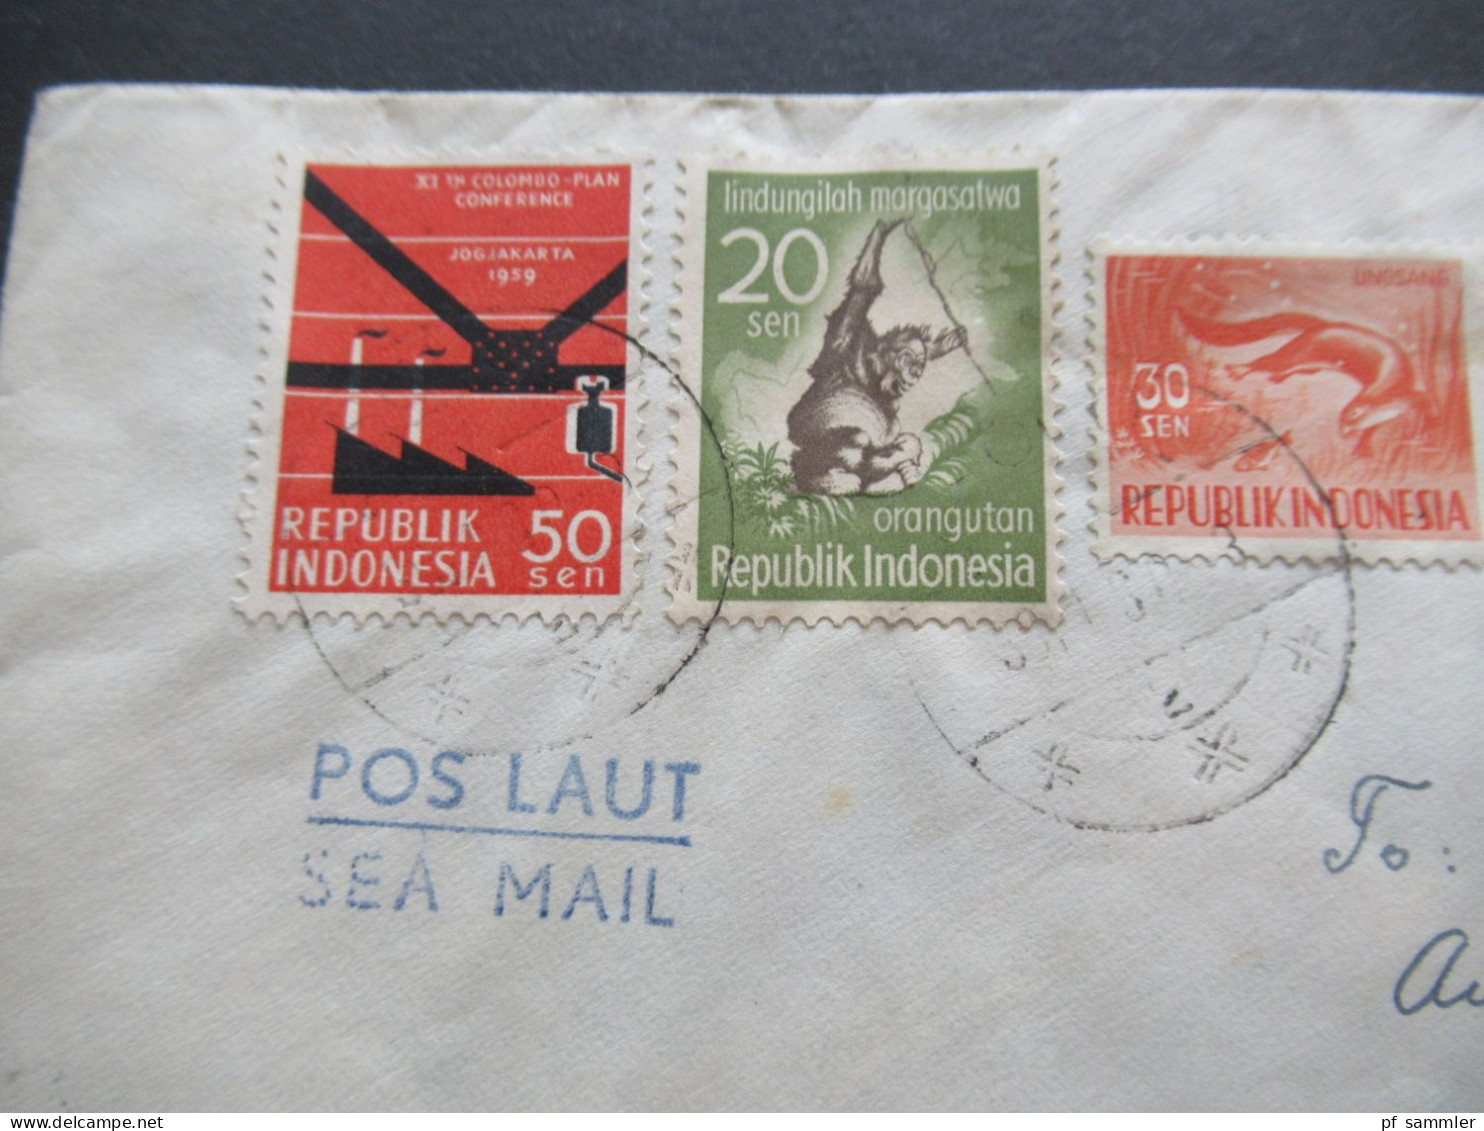 Asien Indonesien MiF Mit 5 Marken 1959 Java - CSR Stempel Pos Laut Sea Mail / Schiffspost / Übersee - Indonesia